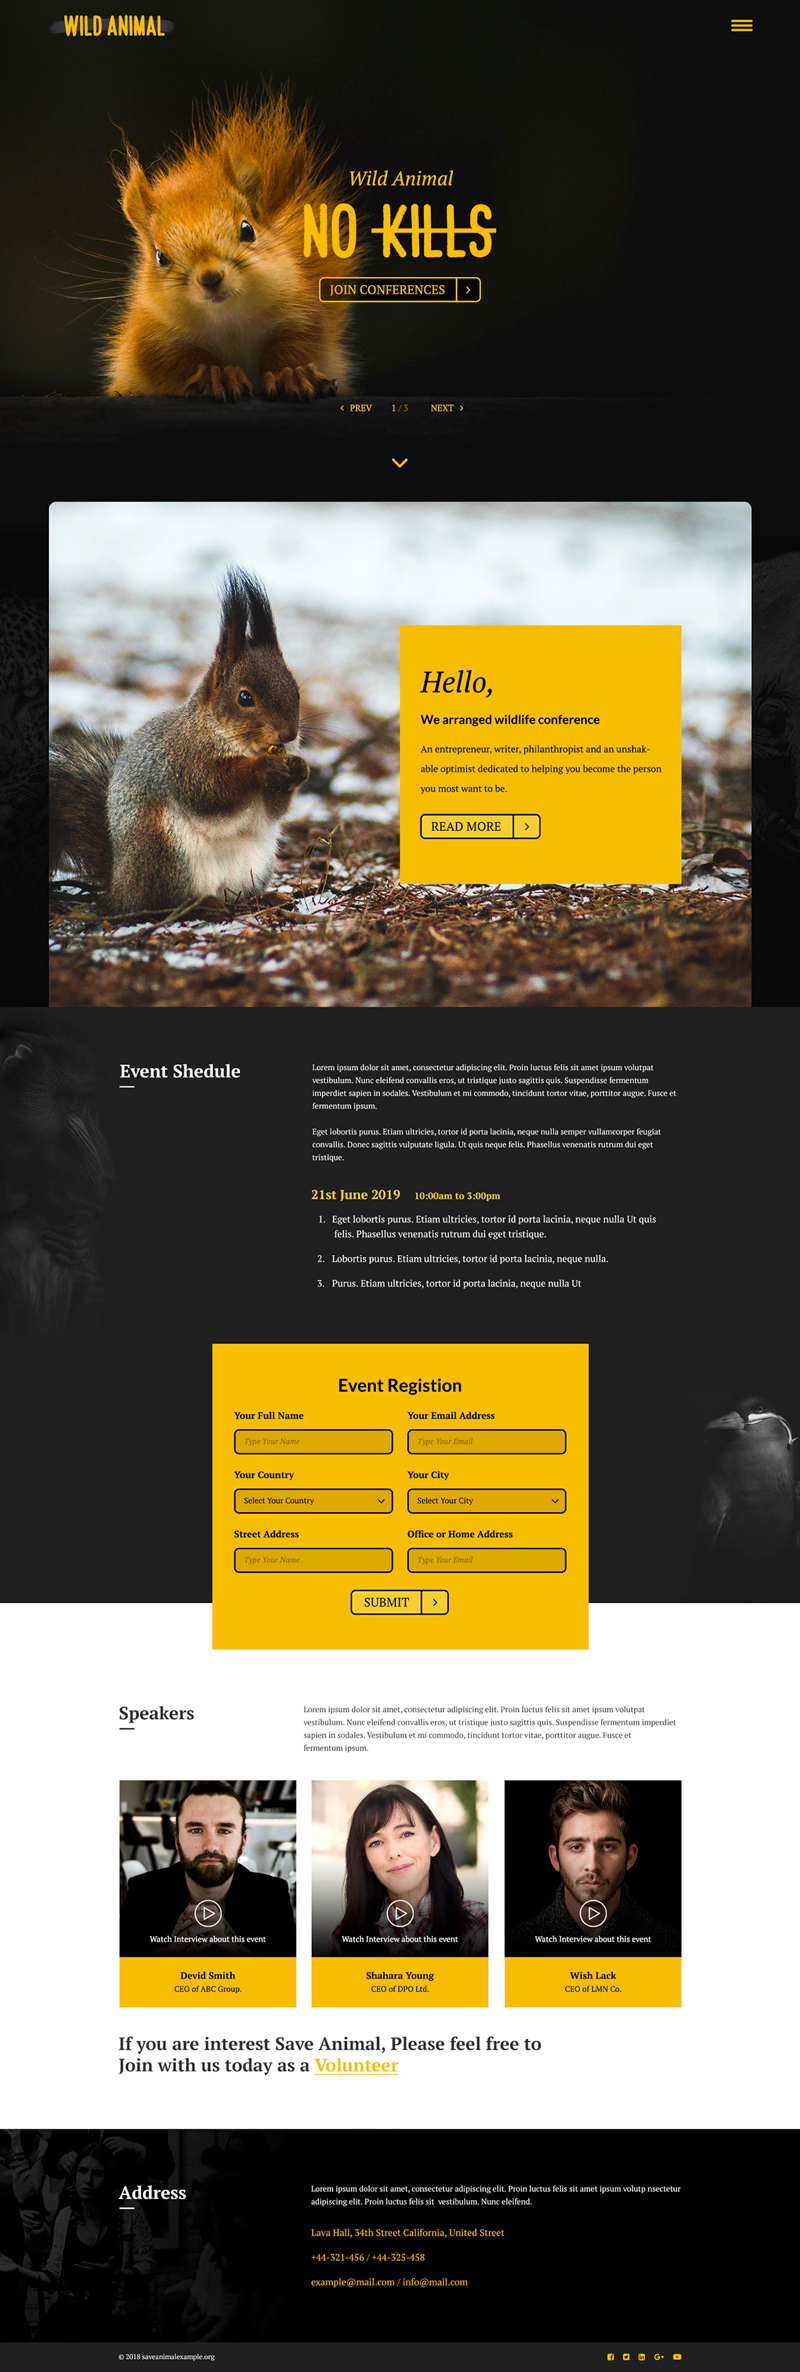 Animal sauvage - Page de destination de la conférence pour Adobe XD